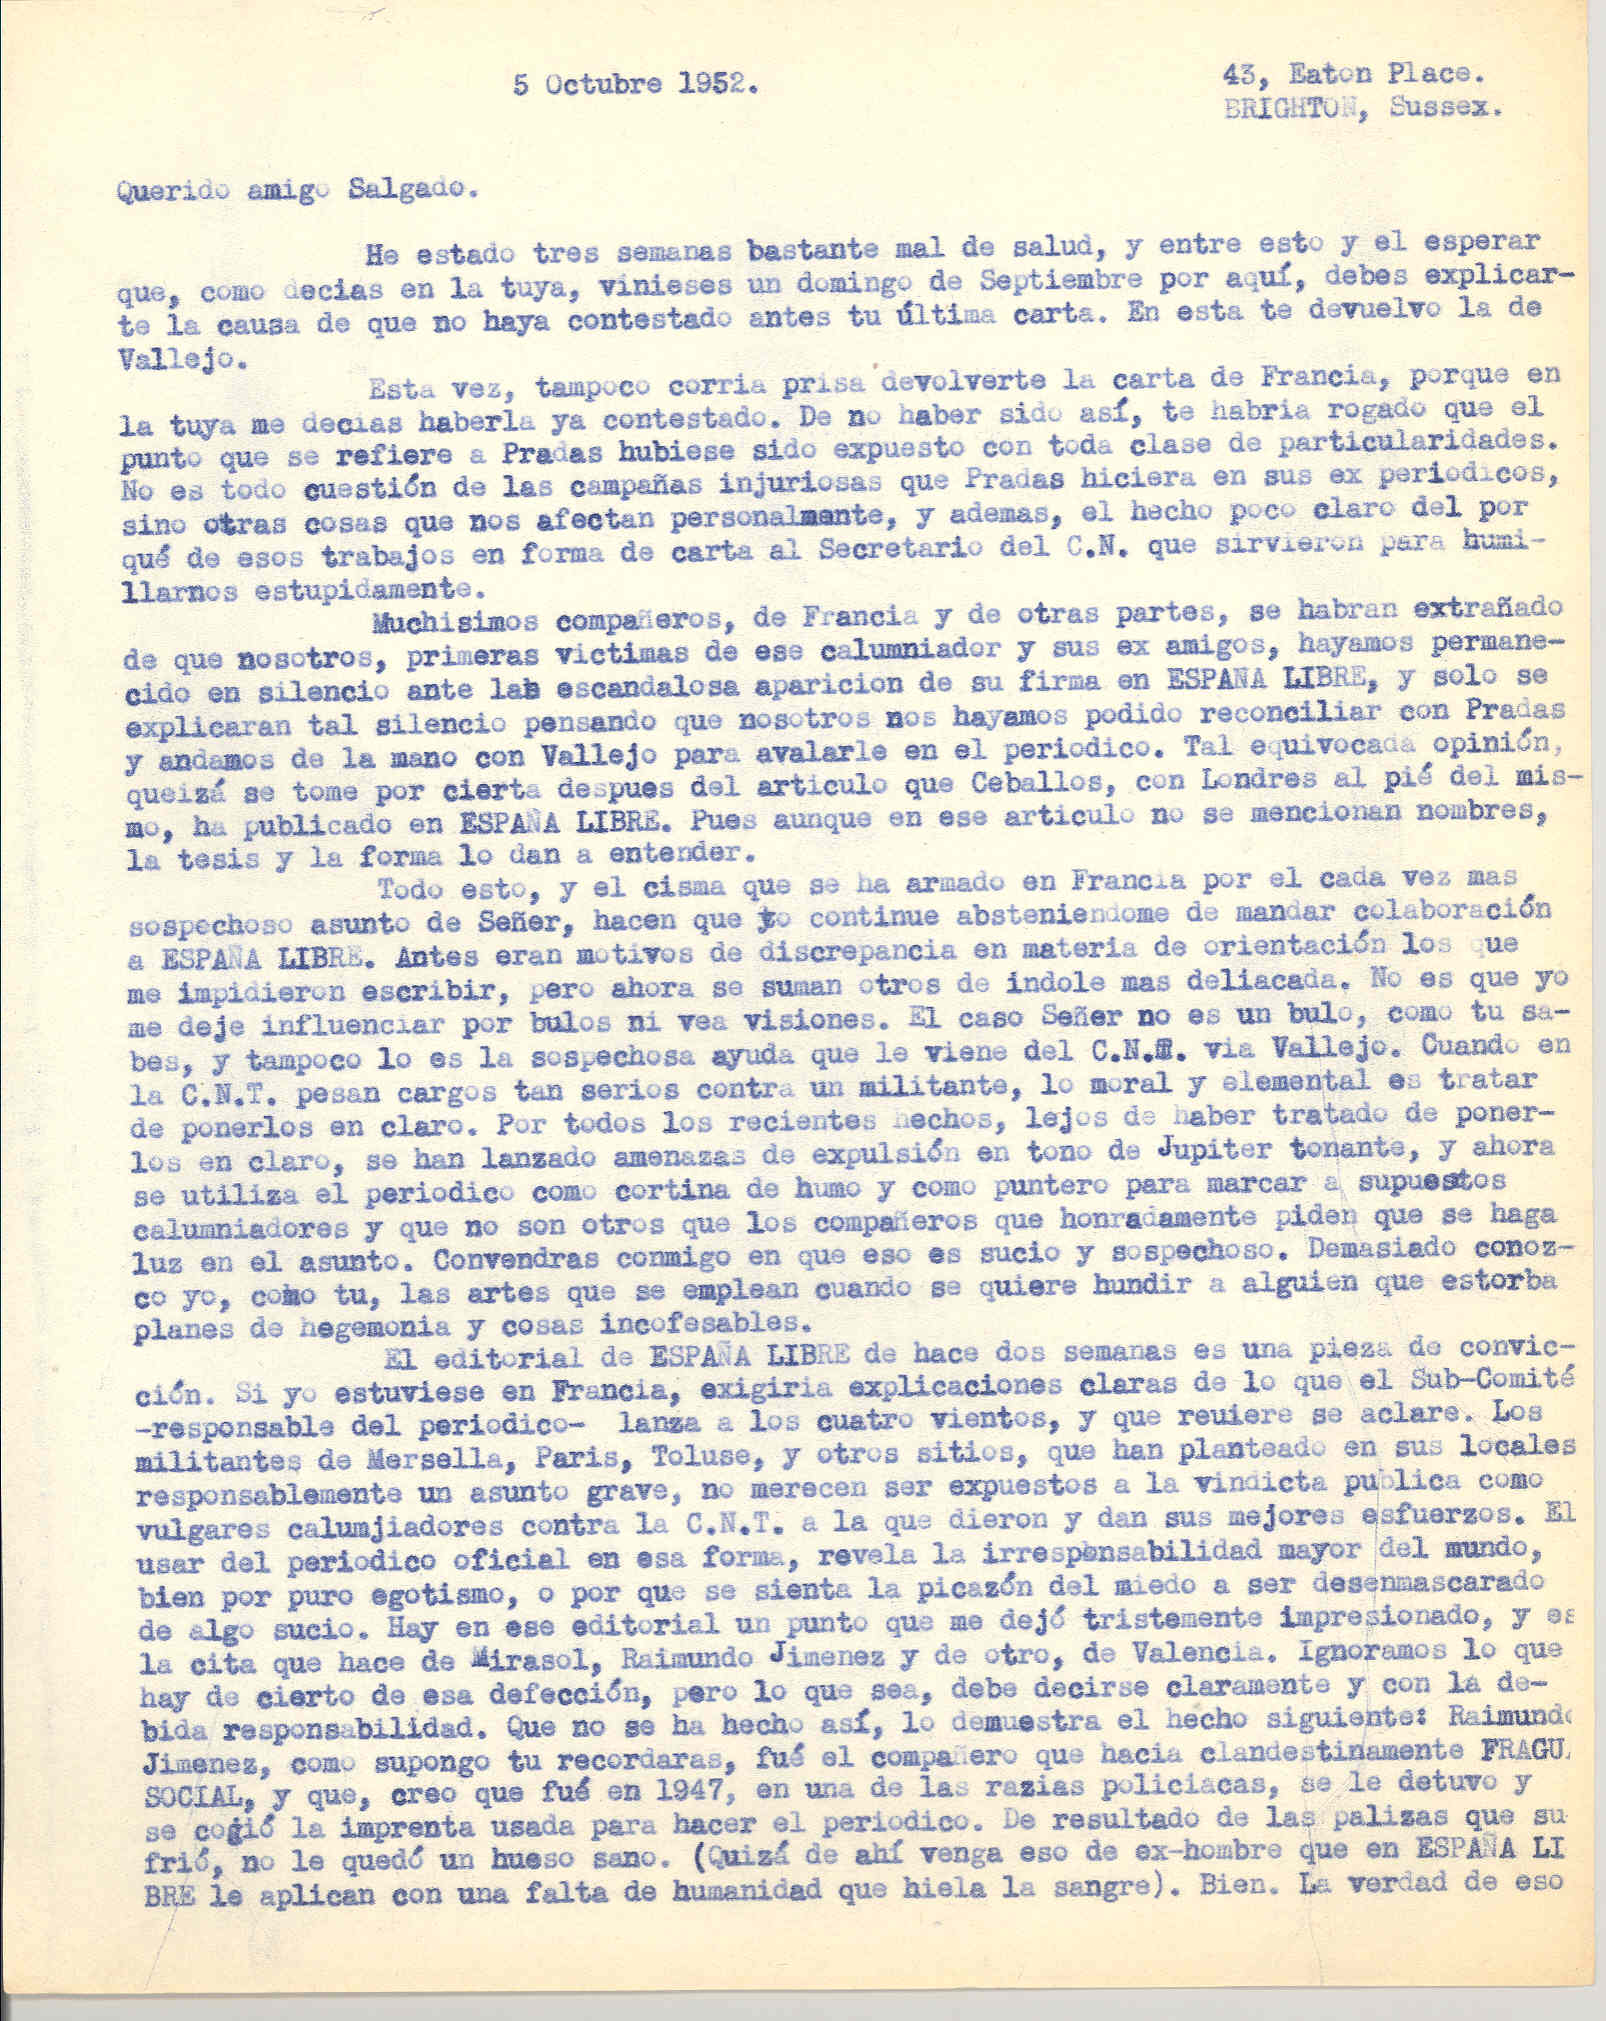 Carta a Manuel Salgado sobre las campañas injuriosas que Pradas hizo en España Libre, el caso de Señer (si está o no trabajando para que la CNT reconozca el régimen de Franco) y sobre las discrepancias de diferentes compañeros